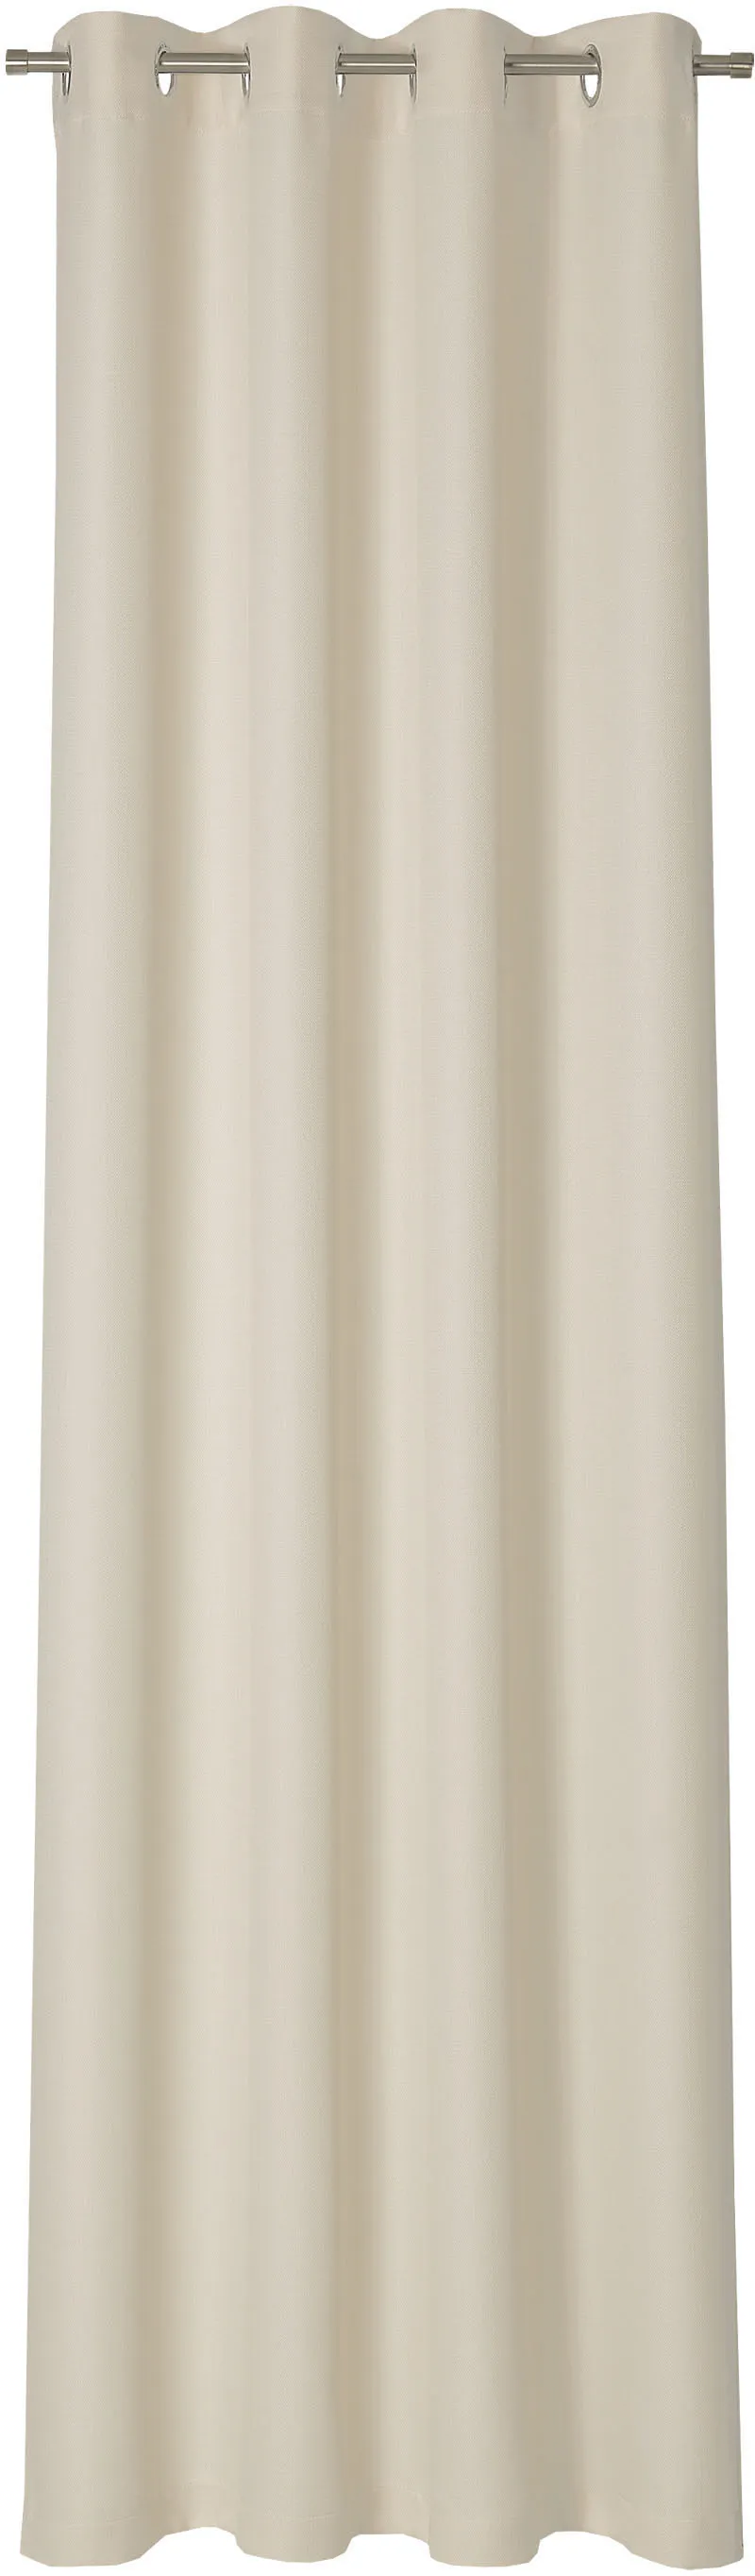 Vorhang NEUTEX FOR YOU "Linessa" Gardinen Gr. 240 cm, Ösen, 137 cm, beige Ösen Ösenschal mit Metallösen, Breite 137 cm, nach Maß